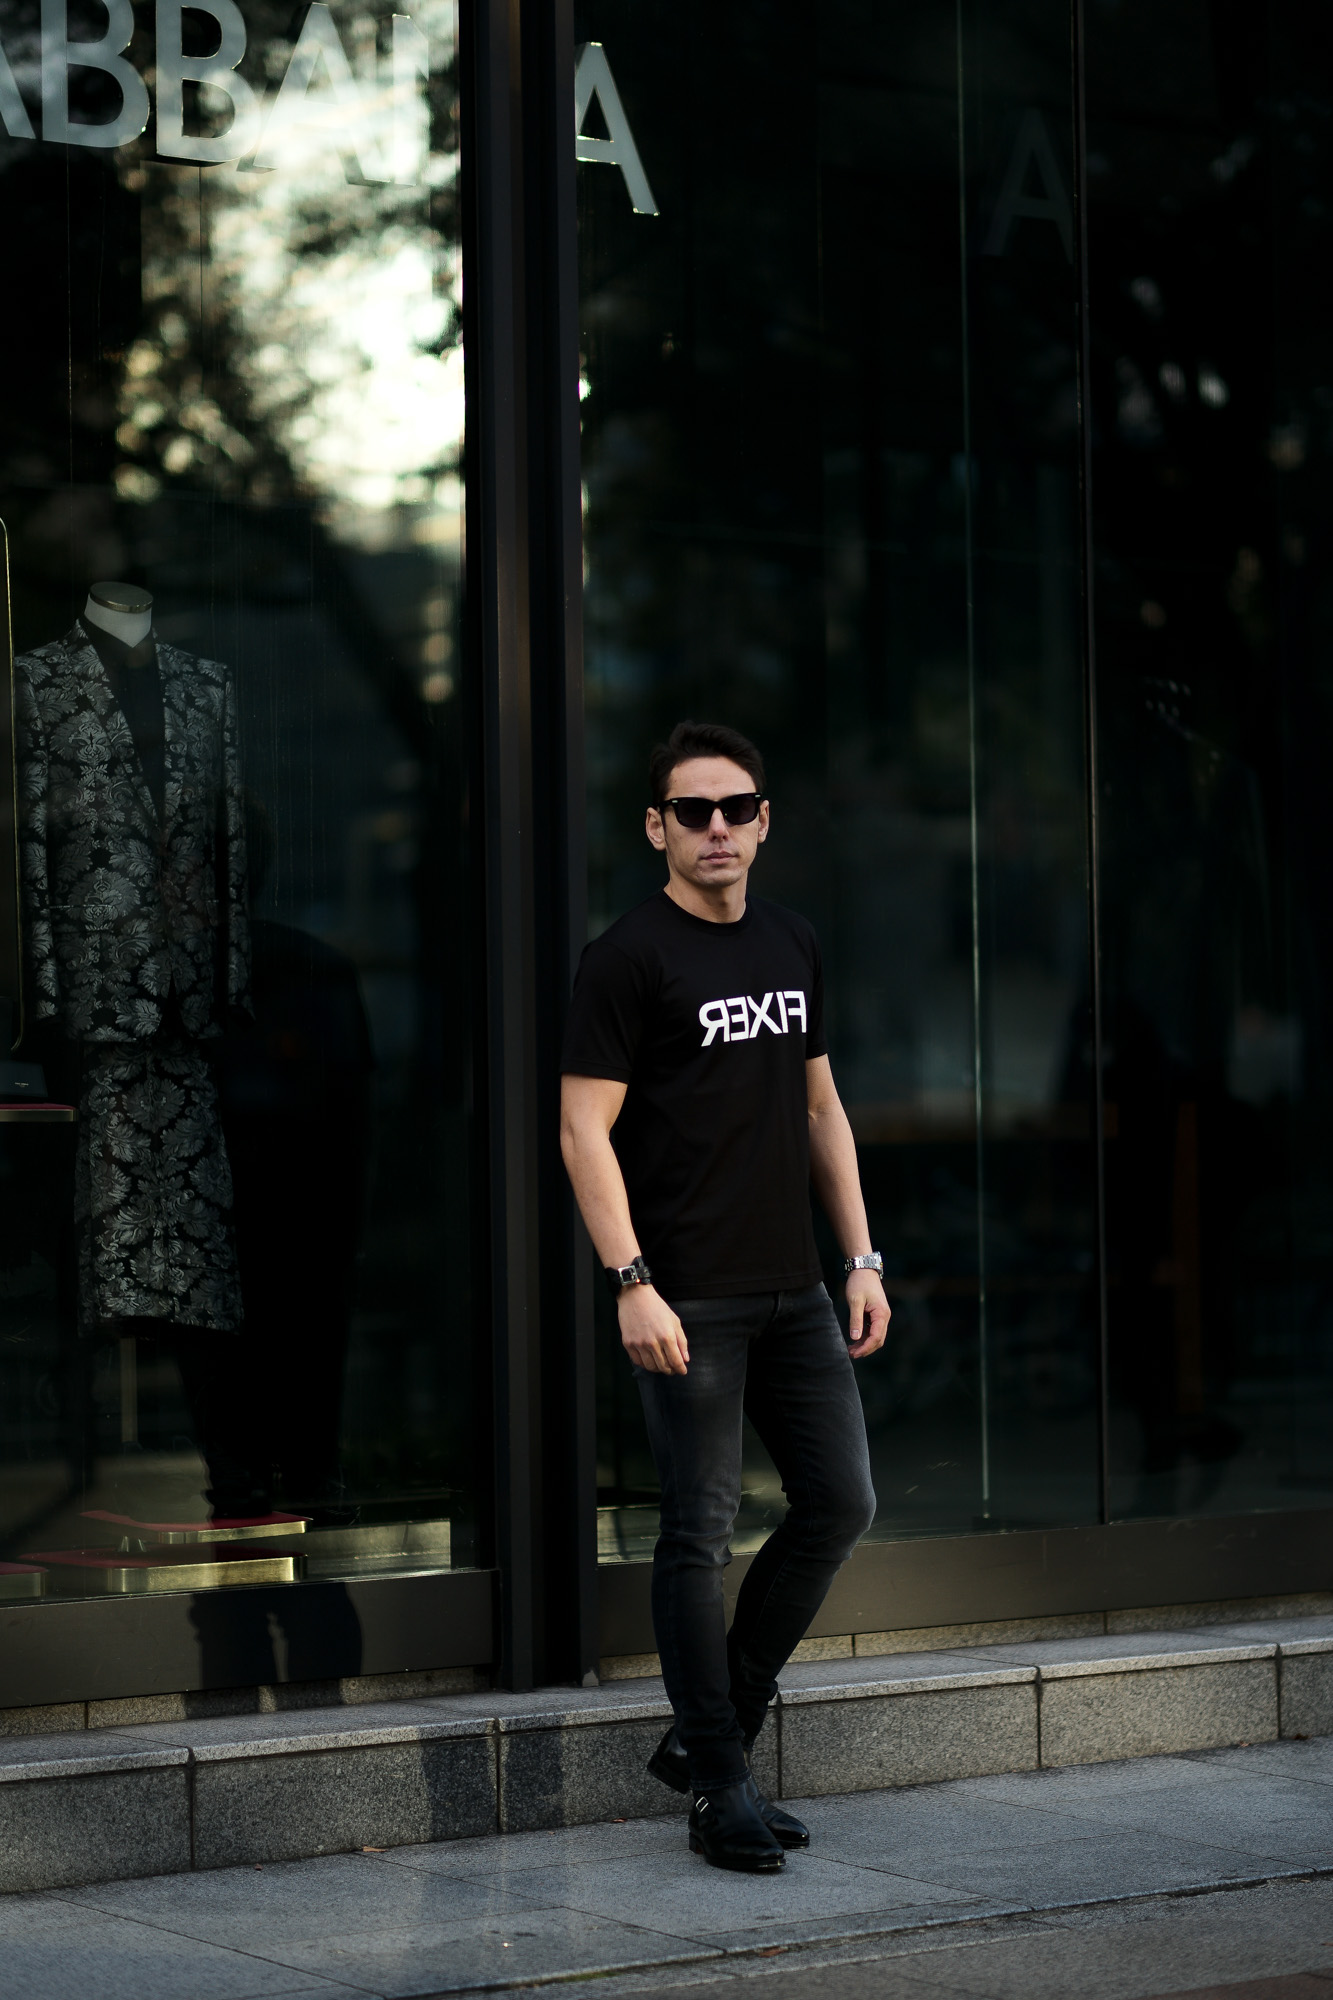 FIXER (フィクサー) FTS-03 Reverse Print Crew Neck T-shirt リバースプリント Tシャツ BLACK (ブラック) 【ご予約開始】【2021.4.17(Sat)～2021.5.03(Mon)】 愛知 名古屋 Alto e Diritto altoediritto アルトエデリット Tシャツ